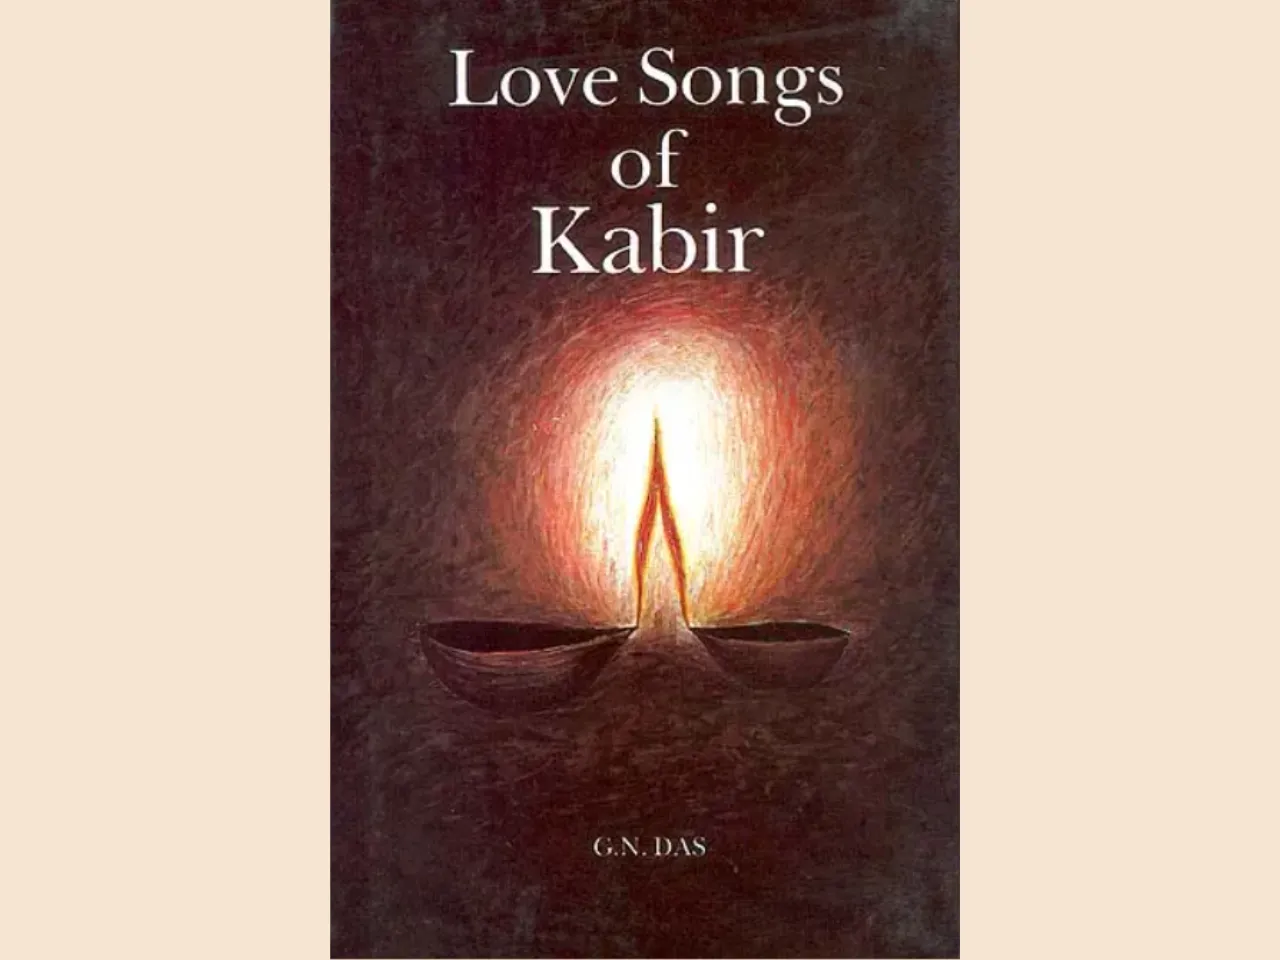 Love Songs of Kabir